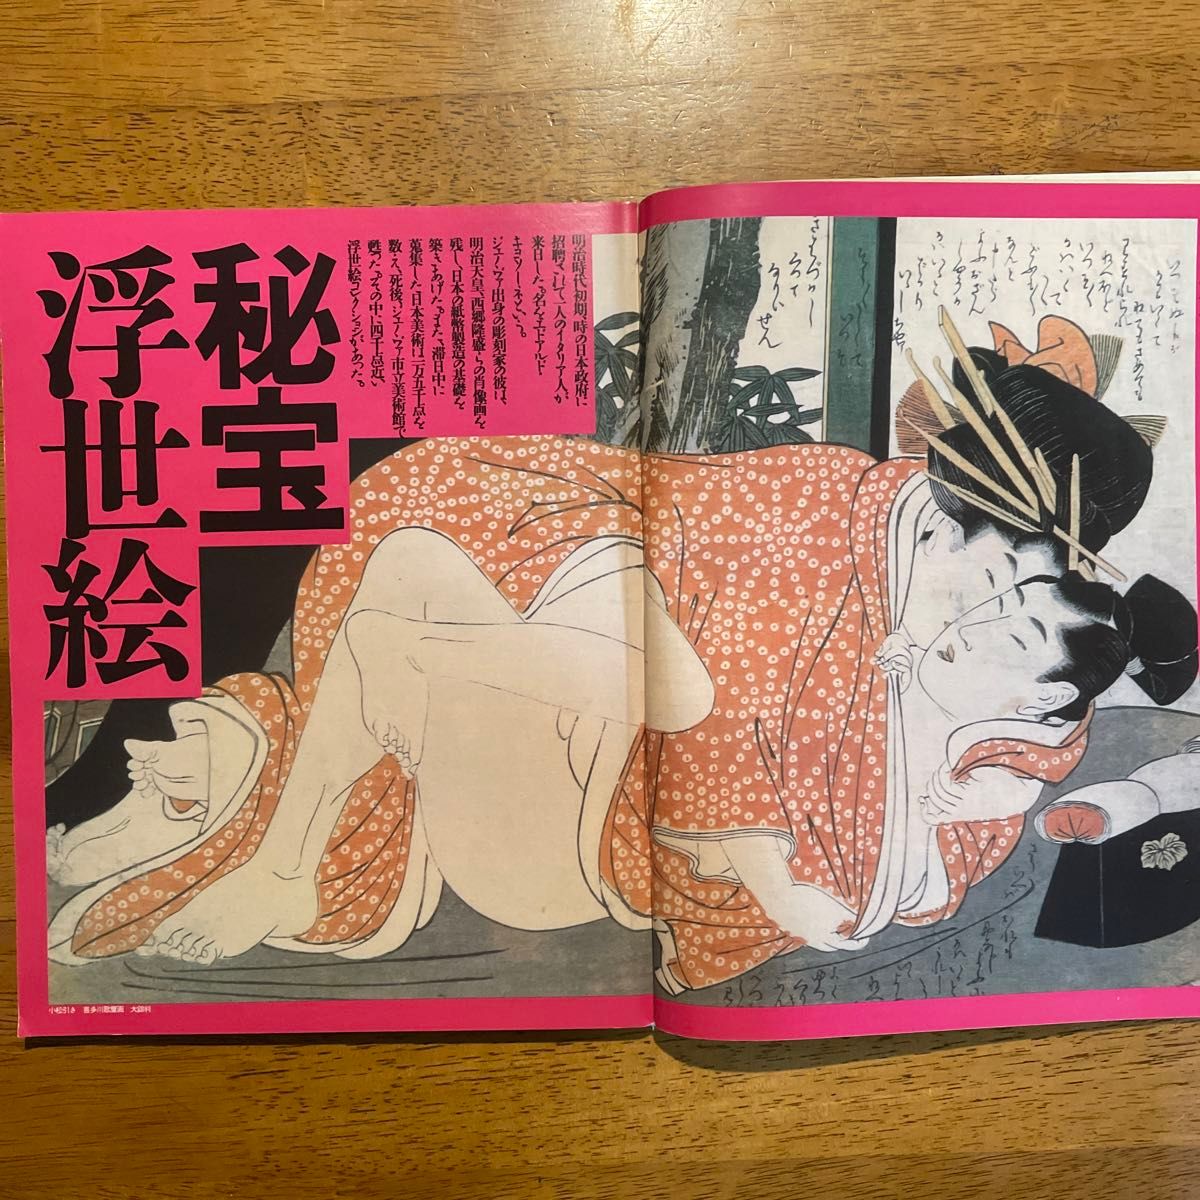 雑誌「ザ・ベスト」1988年発行、浅野ゆう子表紙